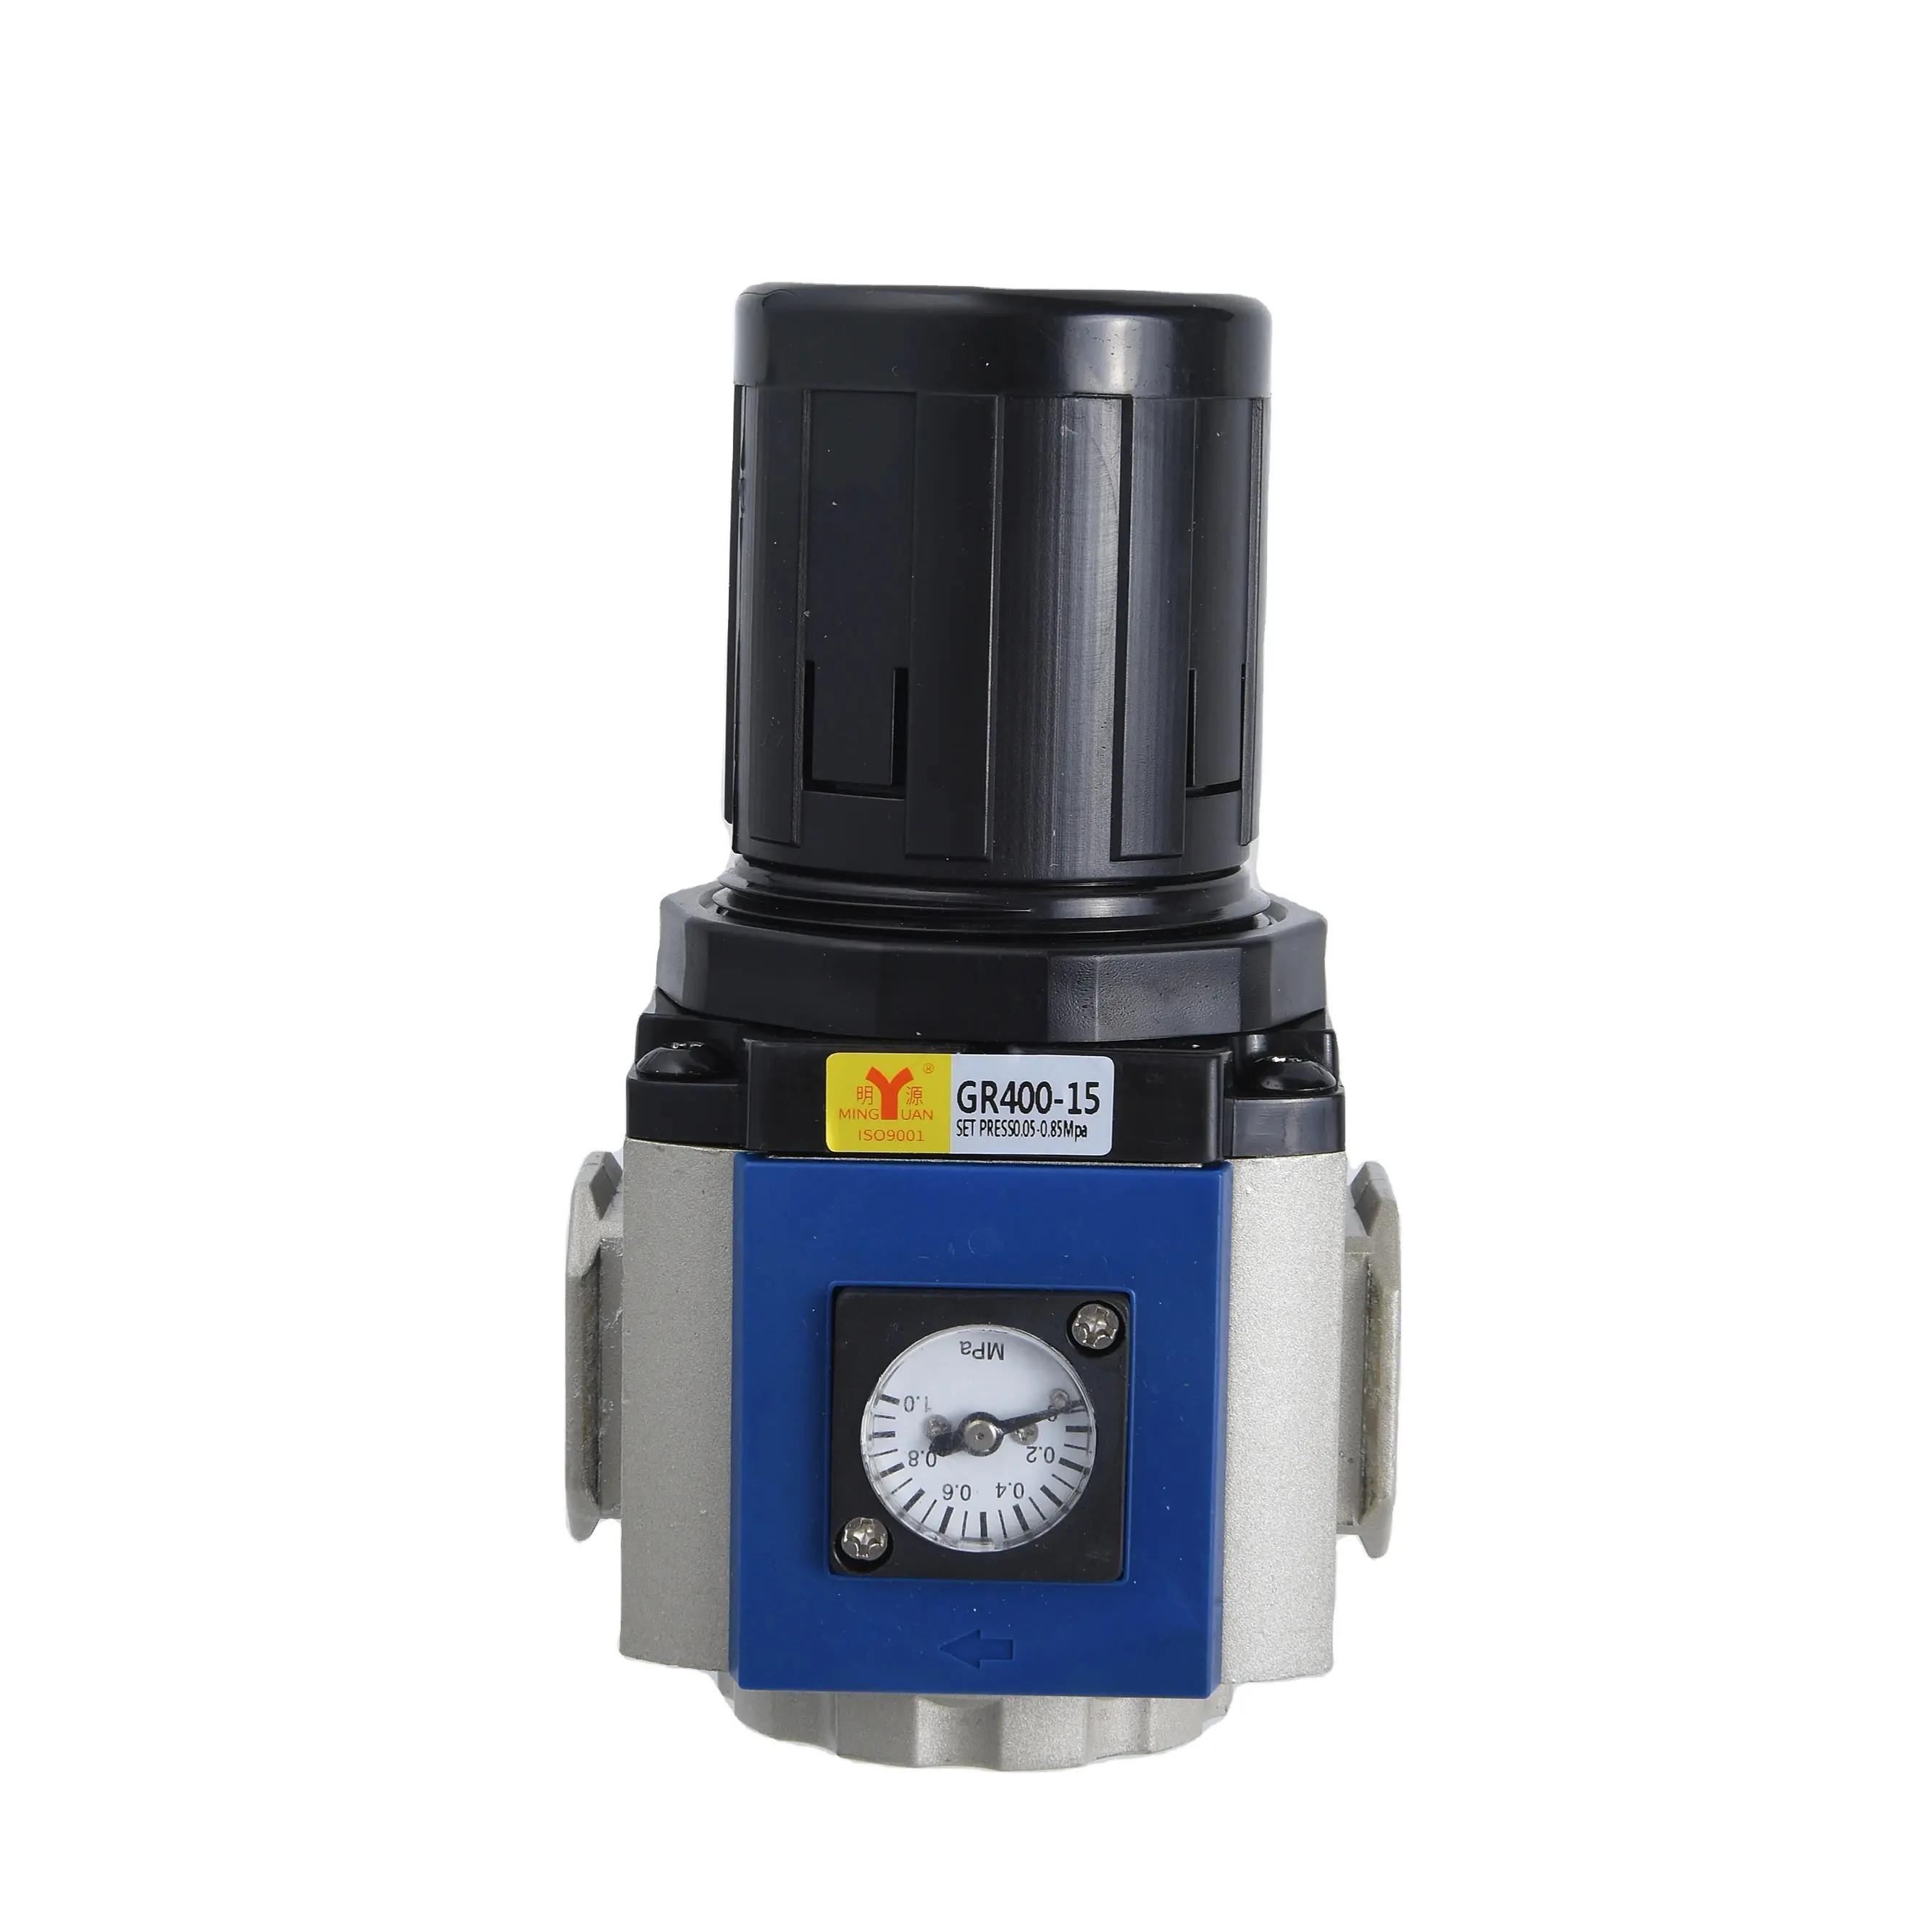 저렴한 가격 GR400-15 PT 1/2 압축 공기 압력 조절기 브래킷 공기 소스 처리 장치